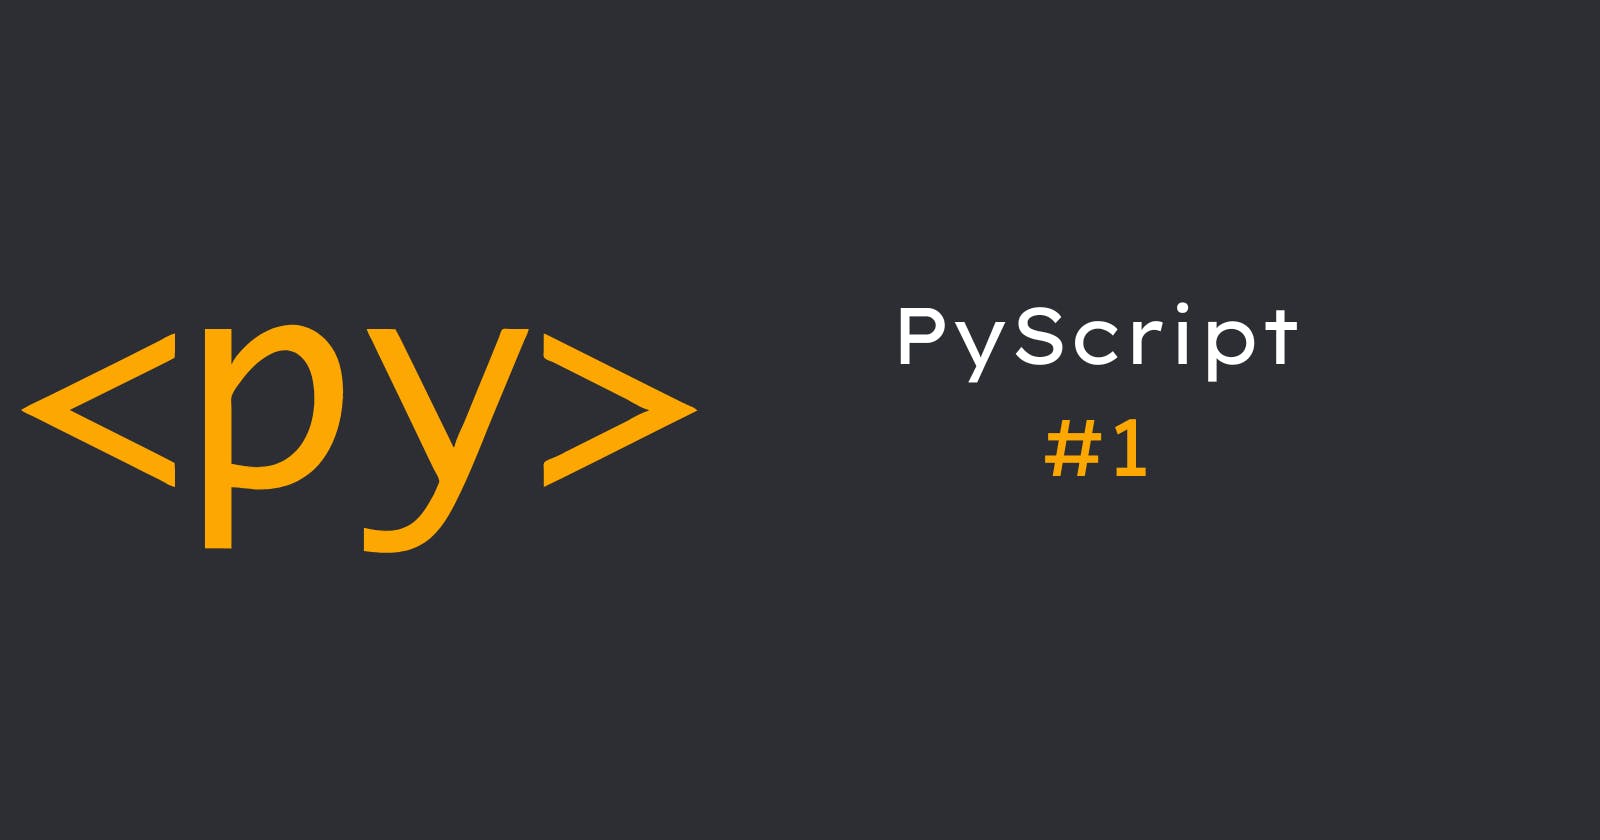 PyScript: Introduction